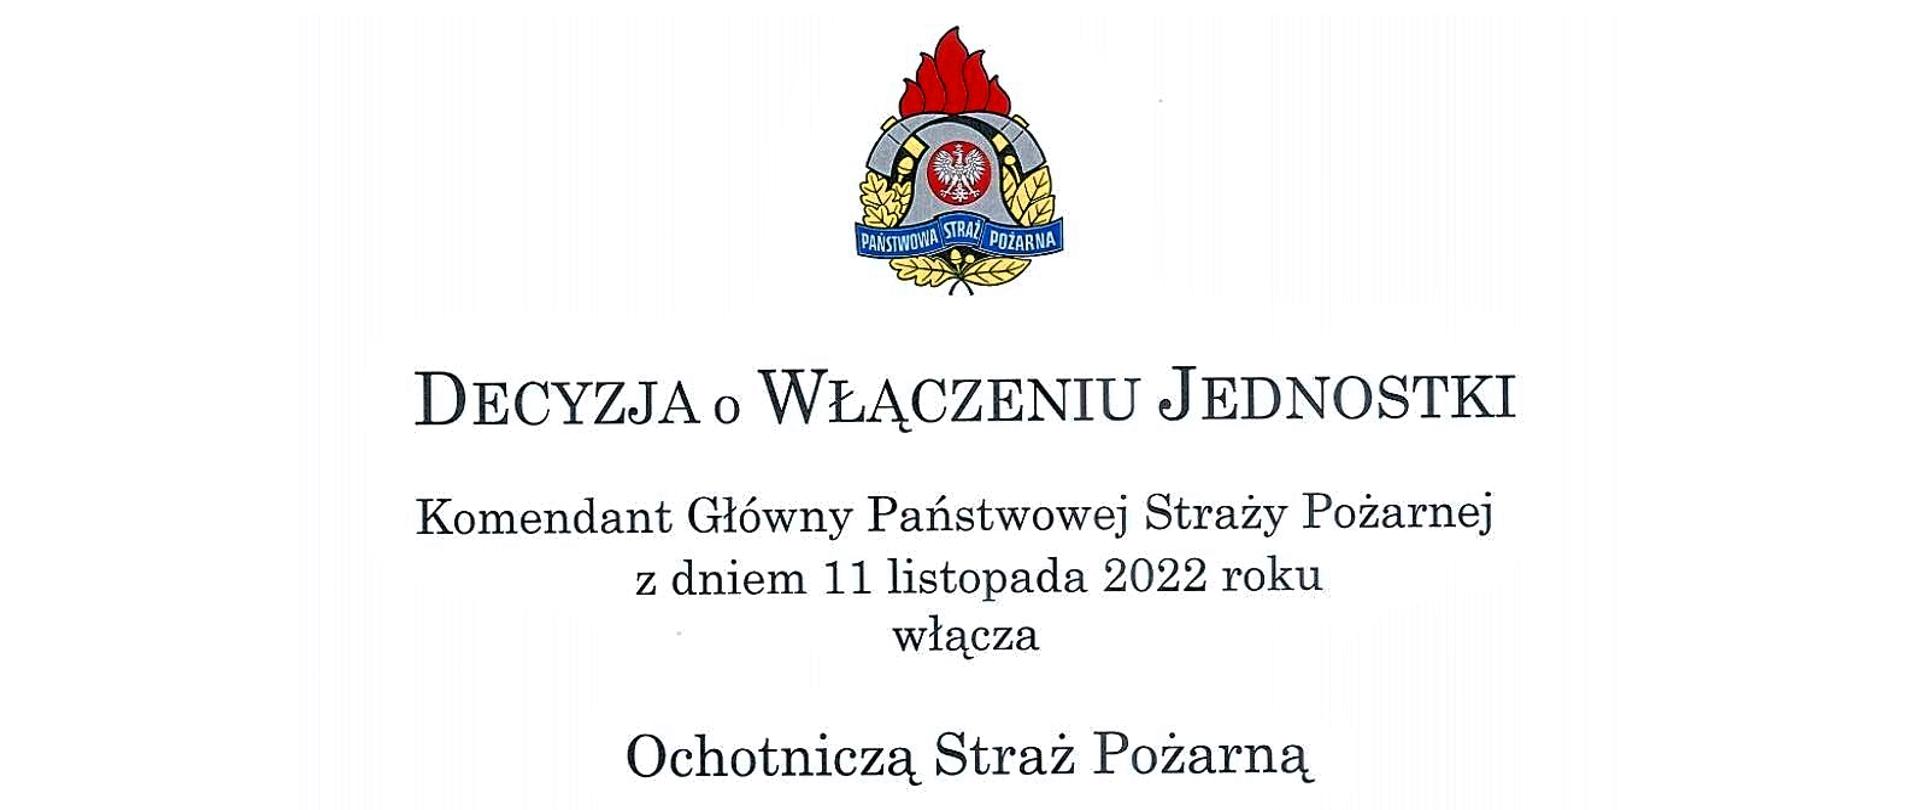 Baner z napisem: Decyzja o włączeniu jednostki. Komendant Główny Państwowej Straży Pożarnej z dniem 11 listopada 2022 roku włącza Ochotniczą Straż Pożarną.